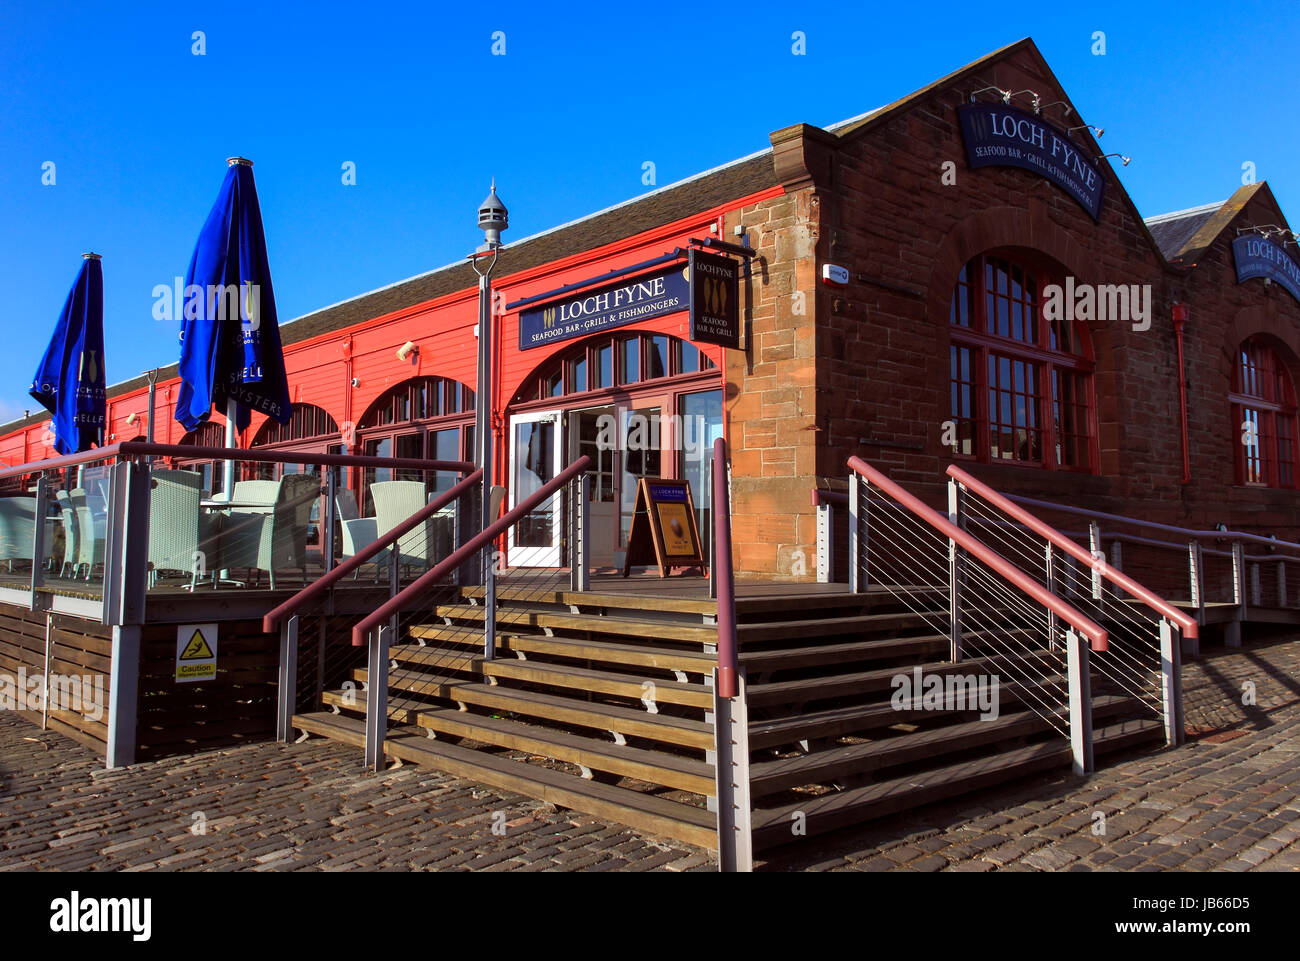 Loch Fyne Seafood Restaurant in einem ehemaligen viktorianischen  Fischmarkt, Newhaven, Edinburgh, Schottland, Großbritannien Stockfotografie  - Alamy